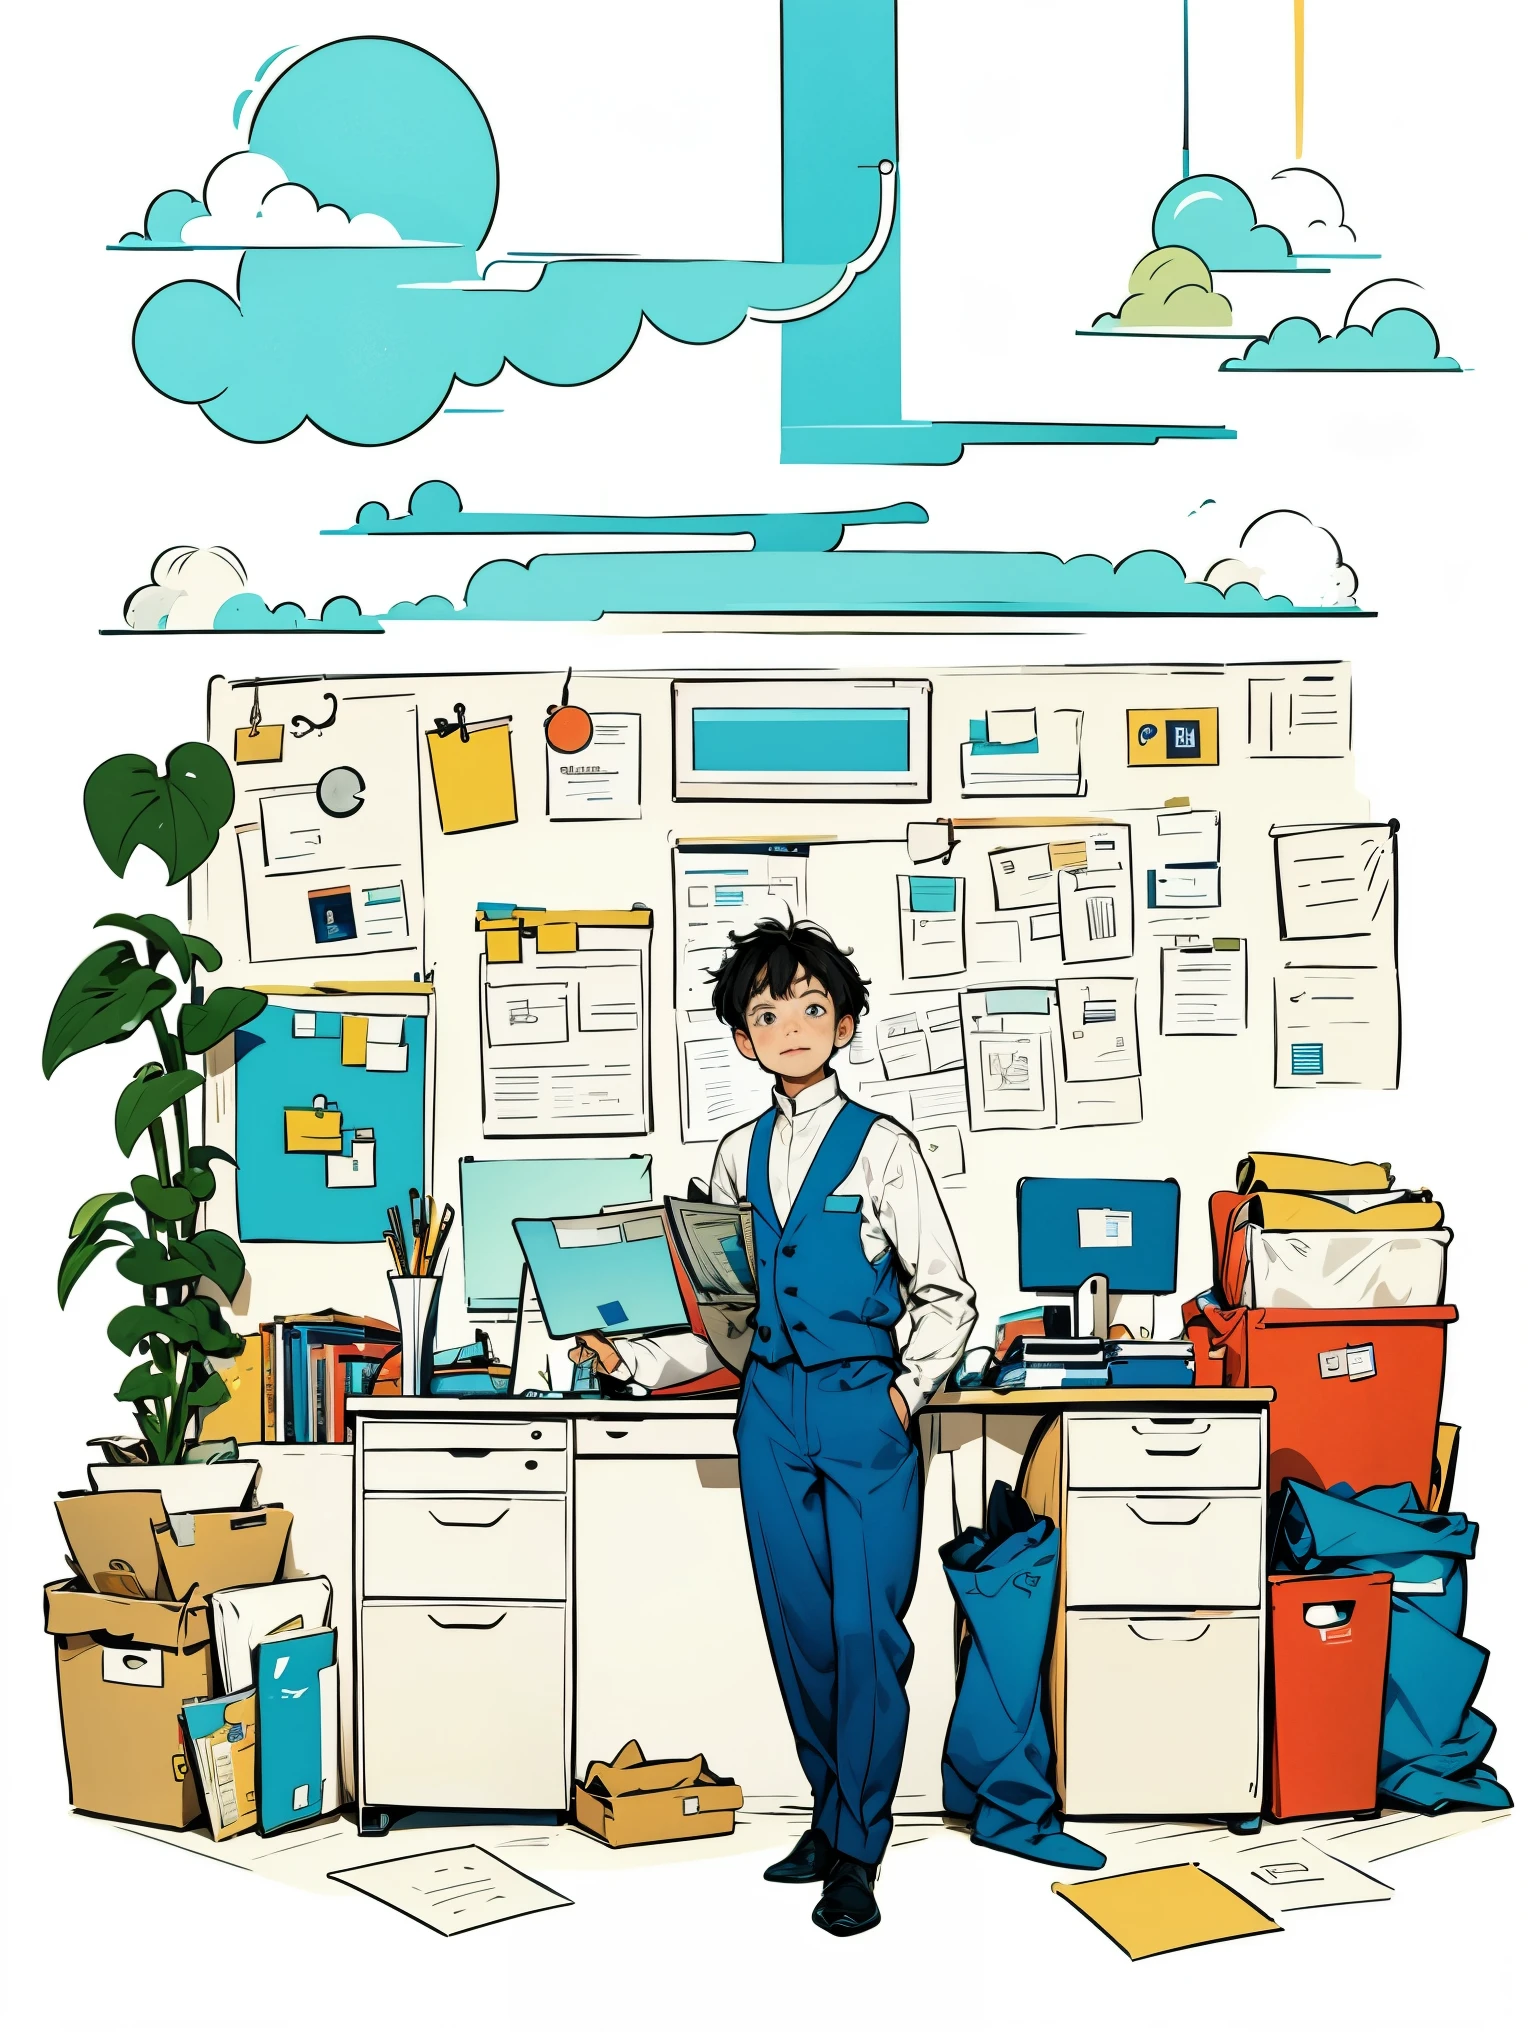 мальчик в белой рубашке и синем жилете,брюки,стоя,работа в офисе,длинные волосы,улыбка,простой фон,